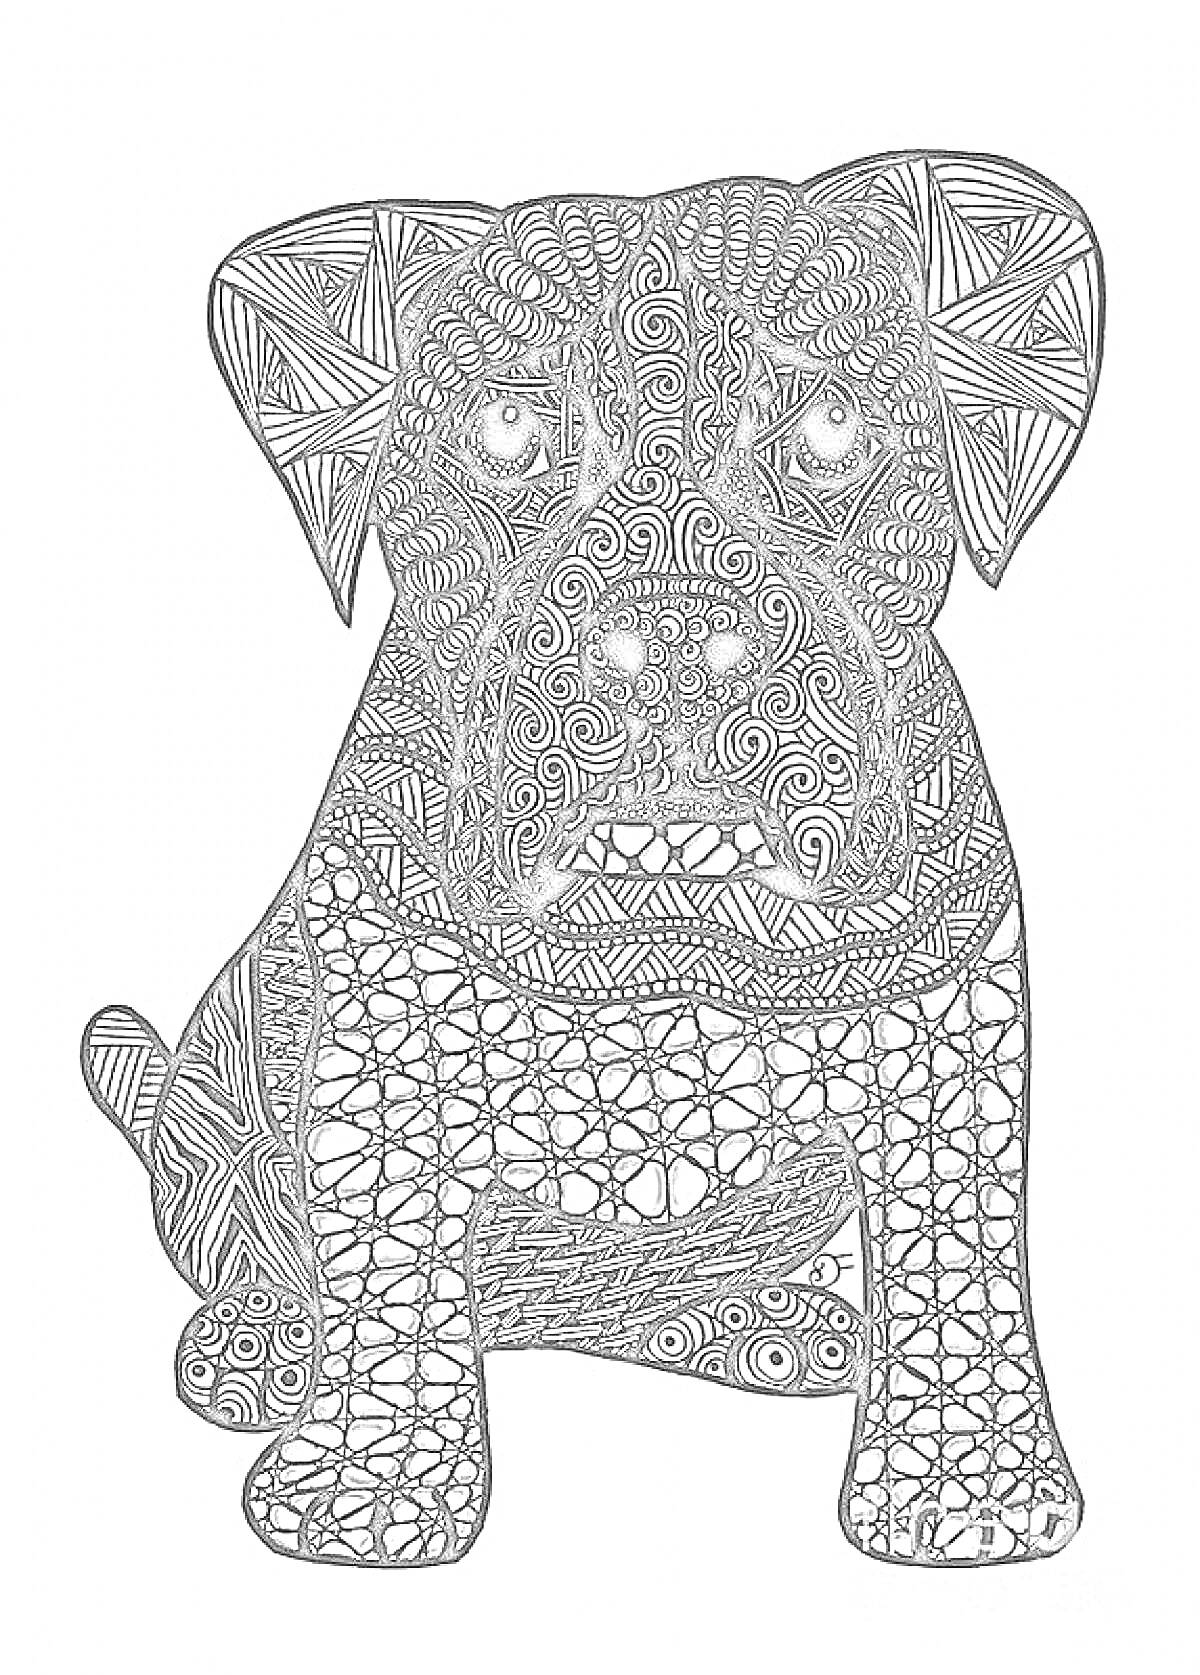 Раскраска Антистресс раскраска - собака с узорами